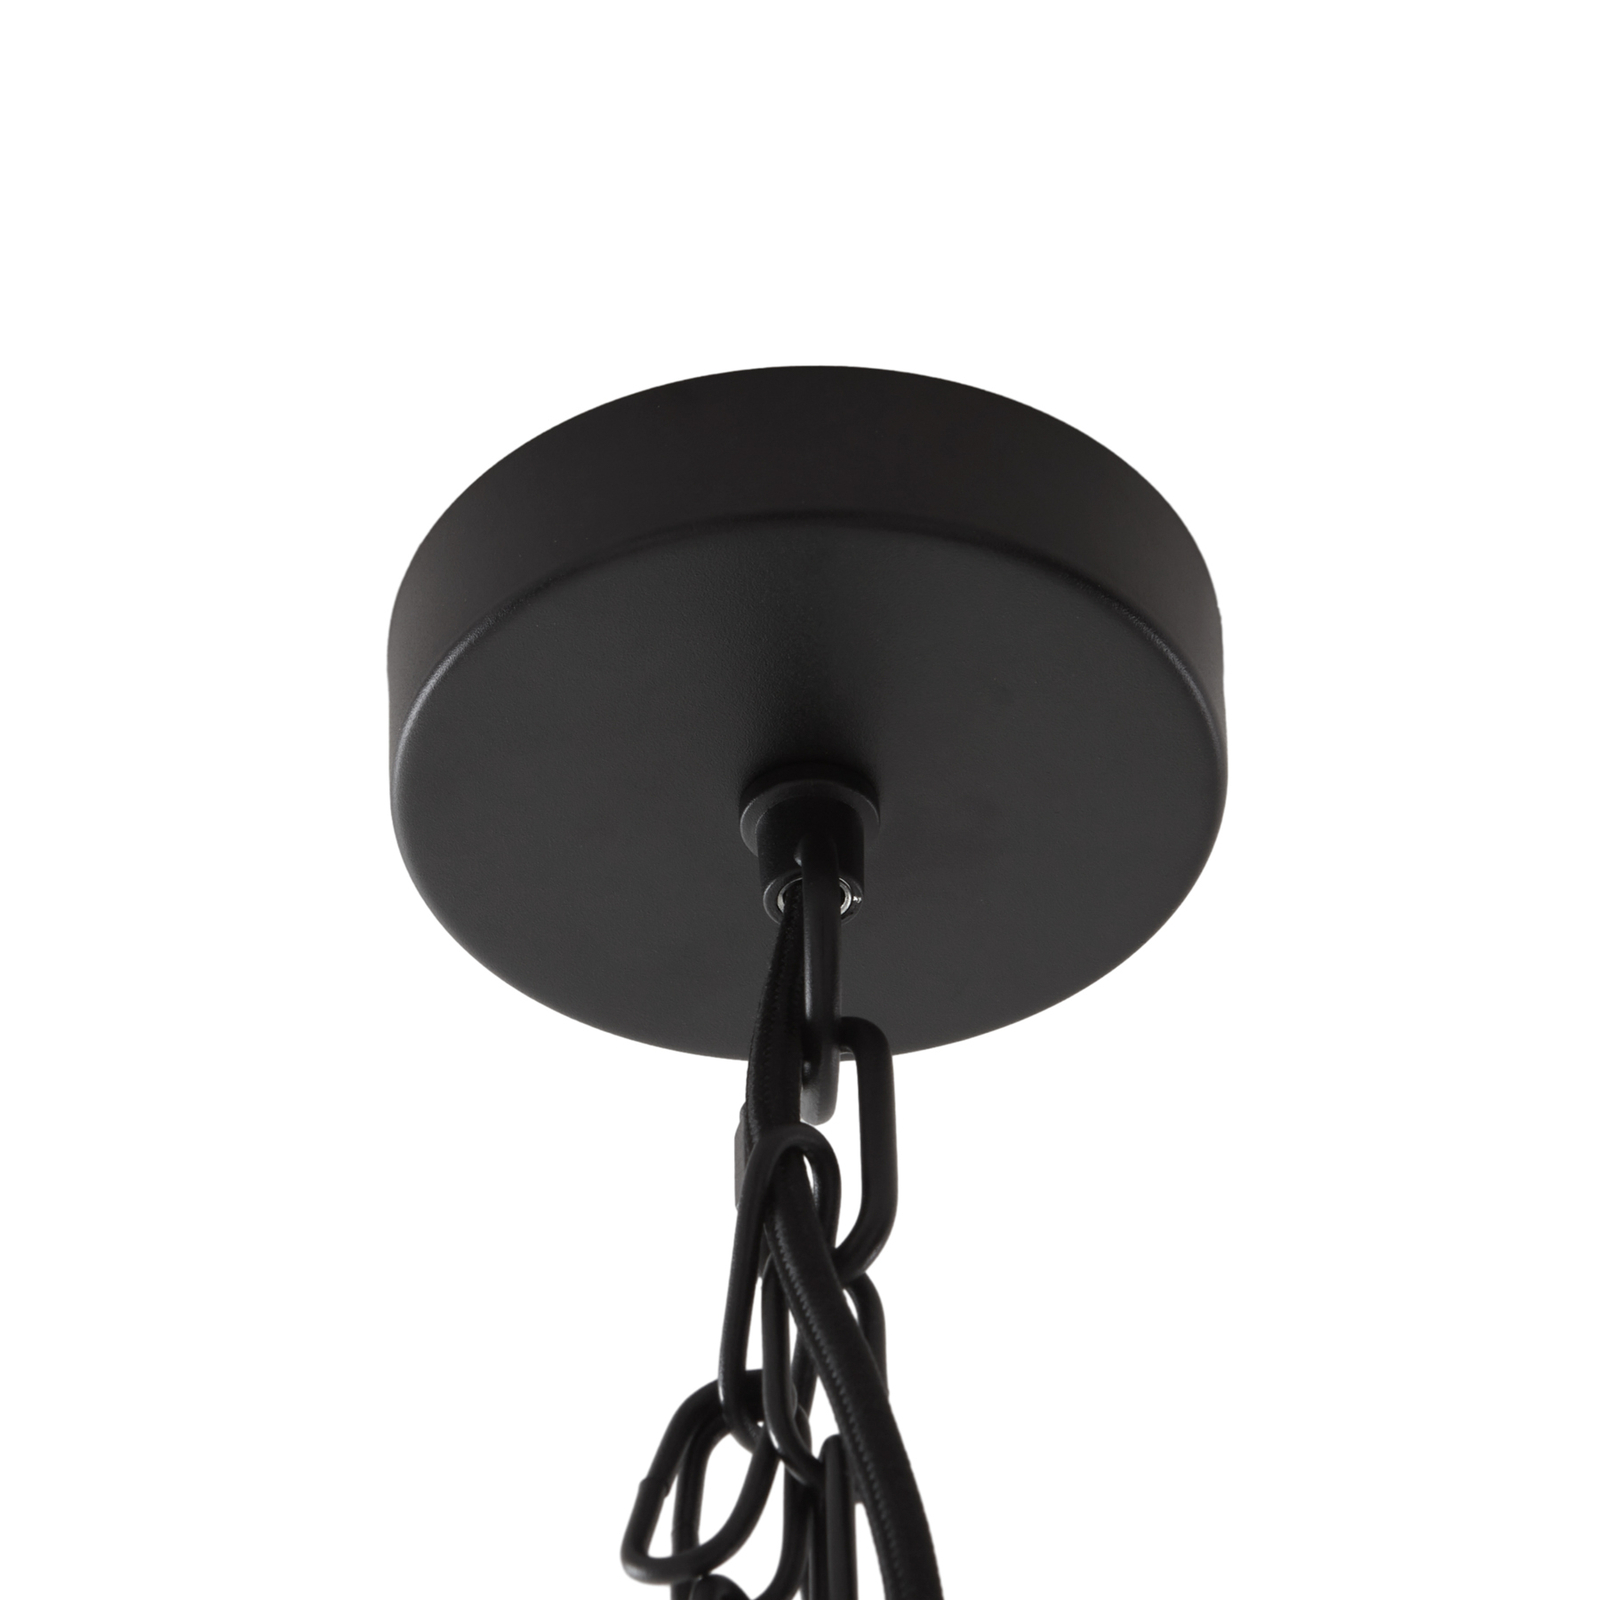 Lucande hanglamp Kaeloria, zwart/messing, aluminium, Ø 35 cm